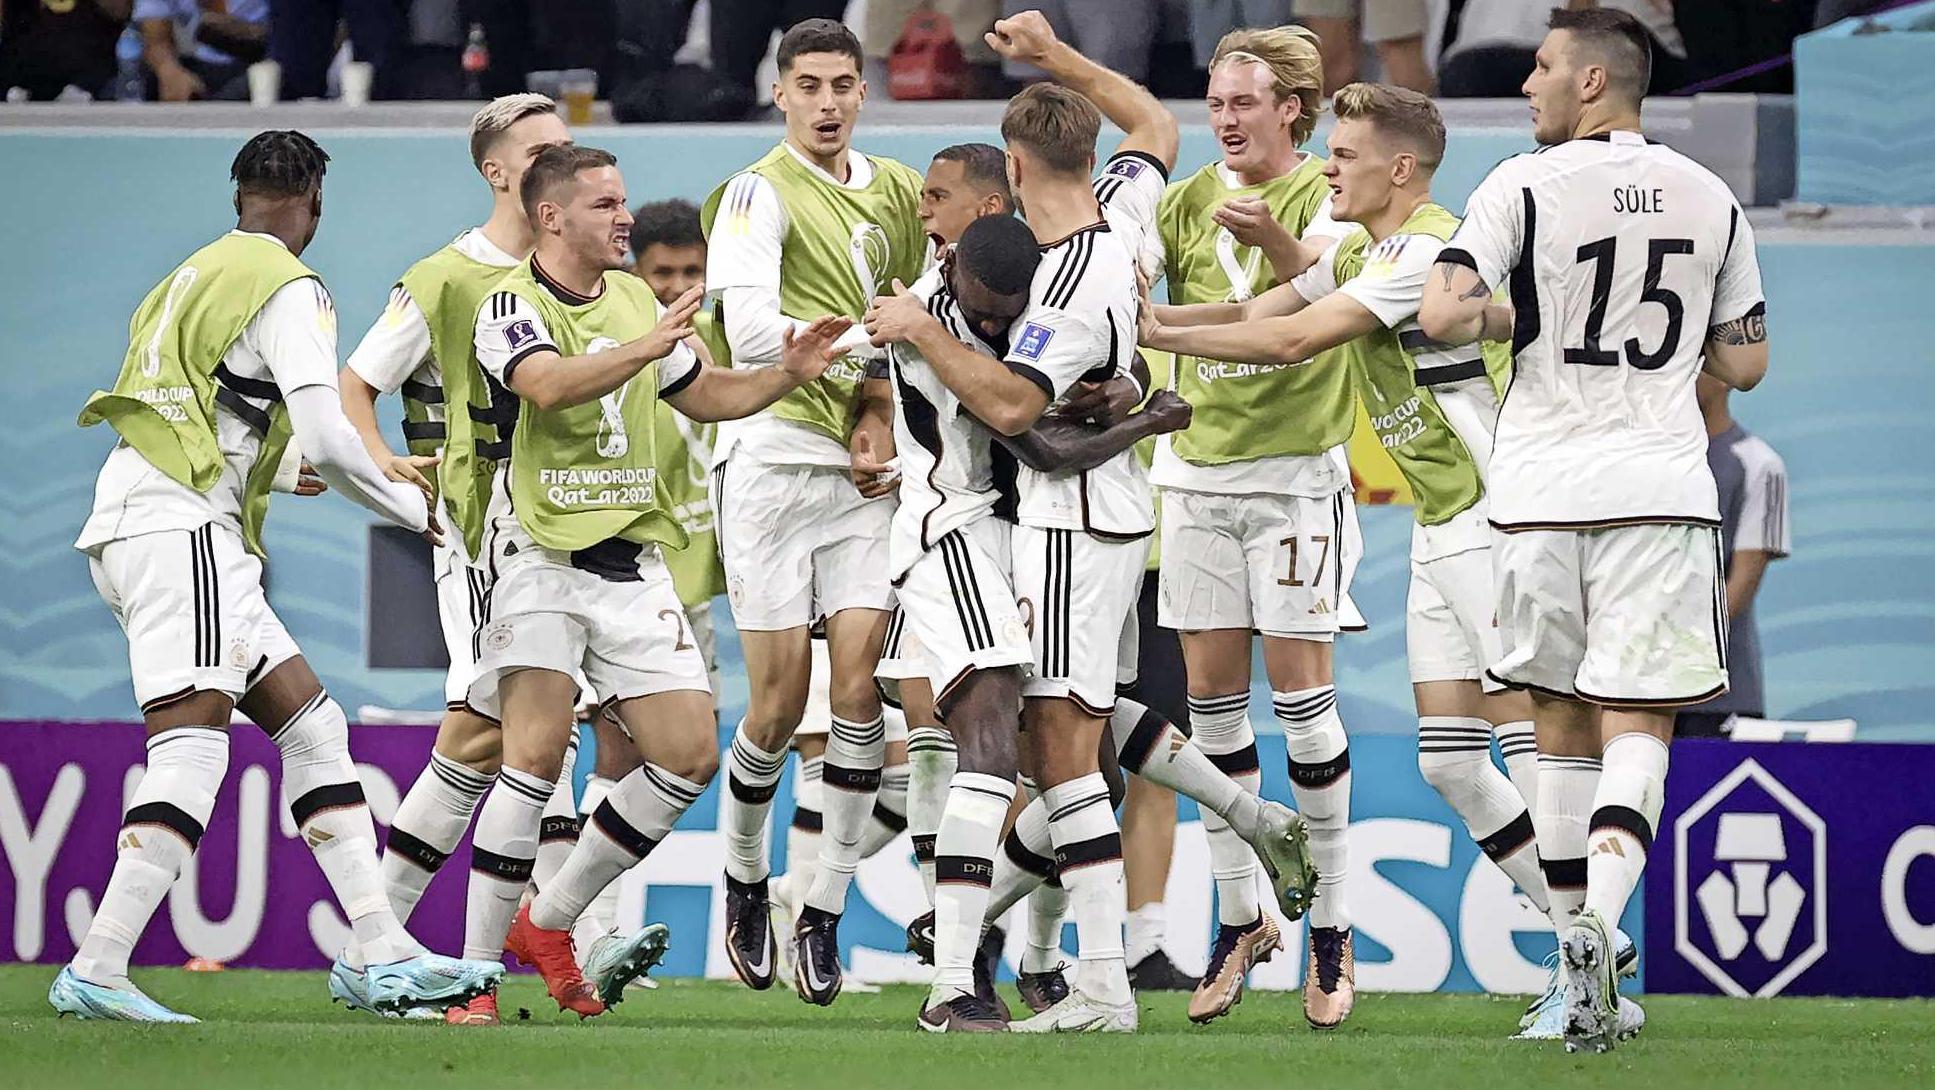 Duitsland leeft nog op WK na ontsnapping tegen Spanje | voetbal | Telegraaf.nl